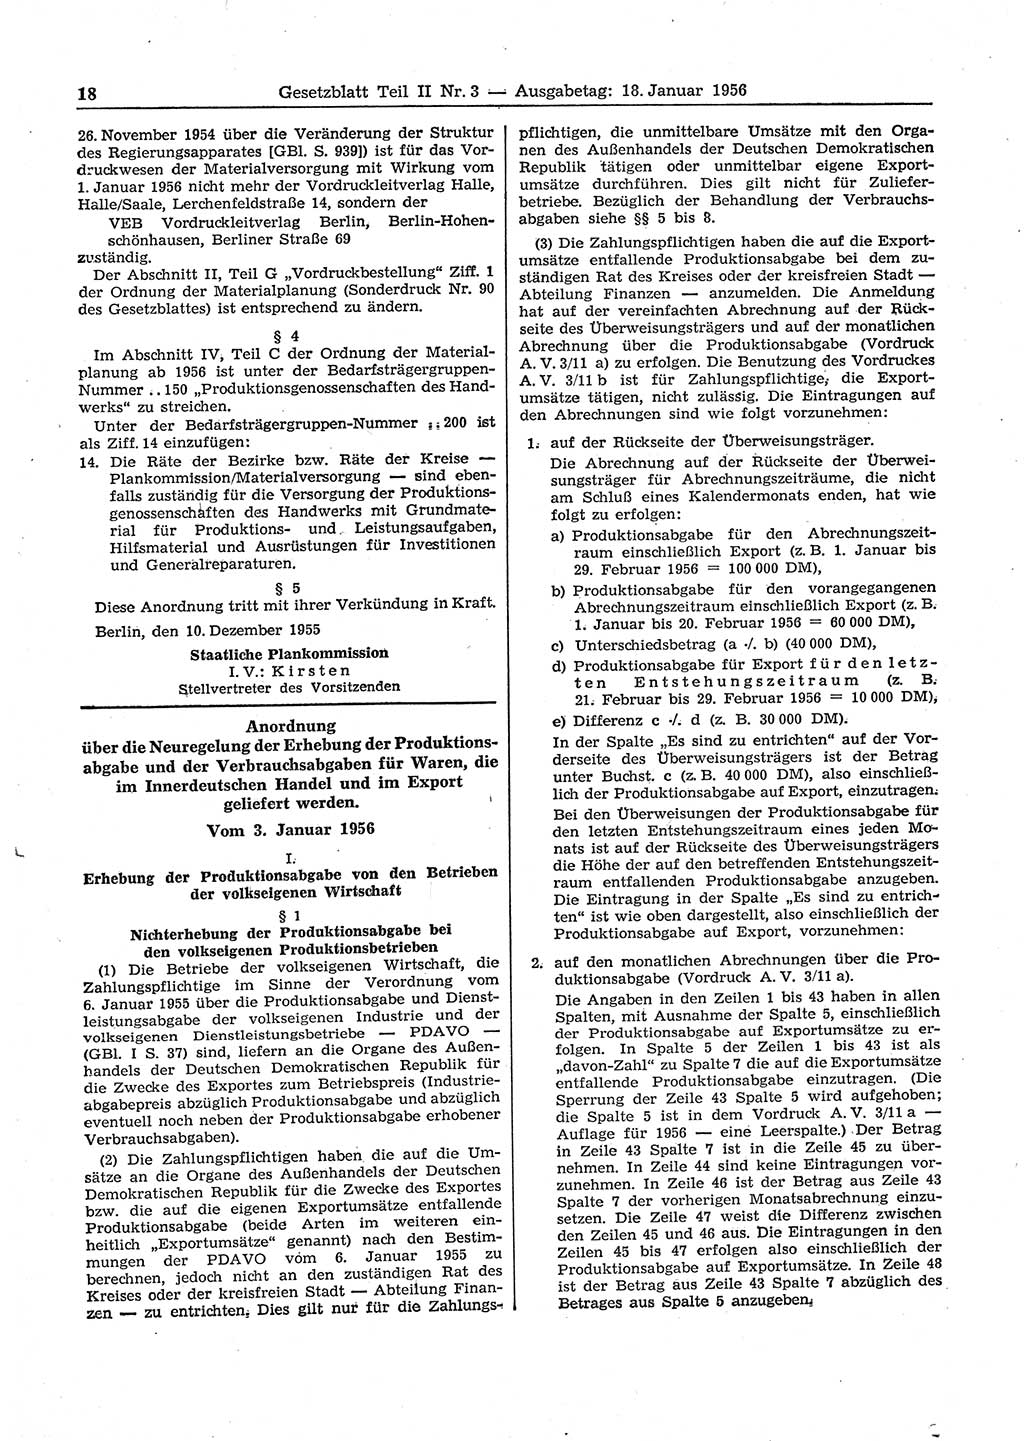 Gesetzblatt (GBl.) der Deutschen Demokratischen Republik (DDR) Teil ⅠⅠ 1956, Seite 18 (GBl. DDR ⅠⅠ 1956, S. 18)